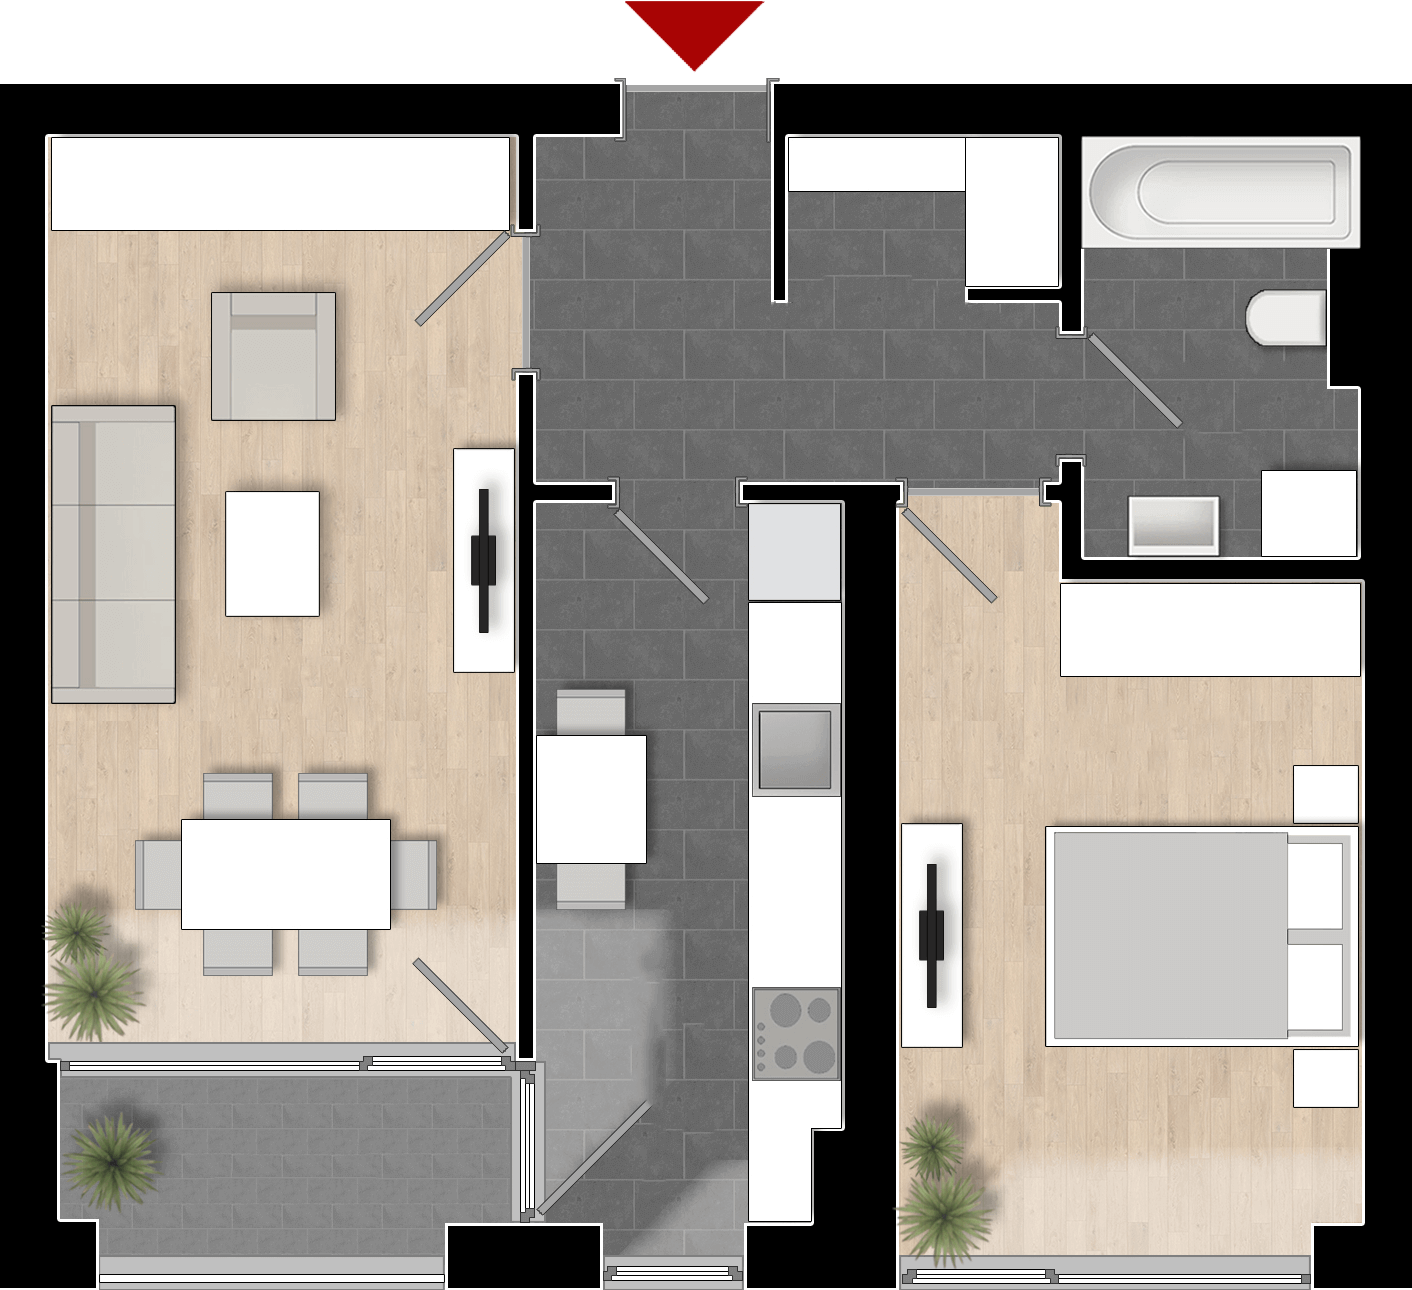  Apartament 502, Tip de apartament 2A cu 2 camere 